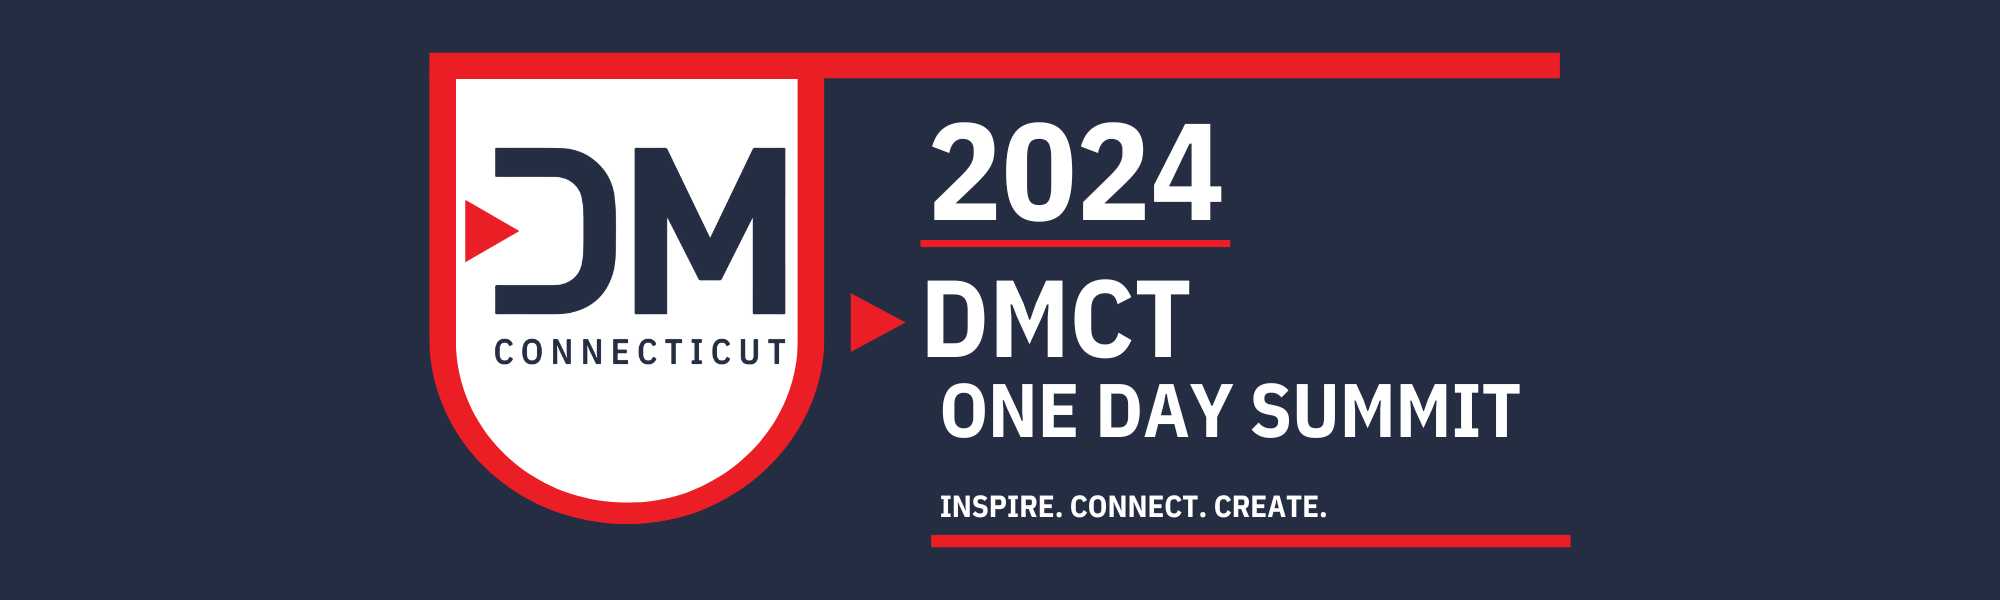 DMCT Summit 2024 banner